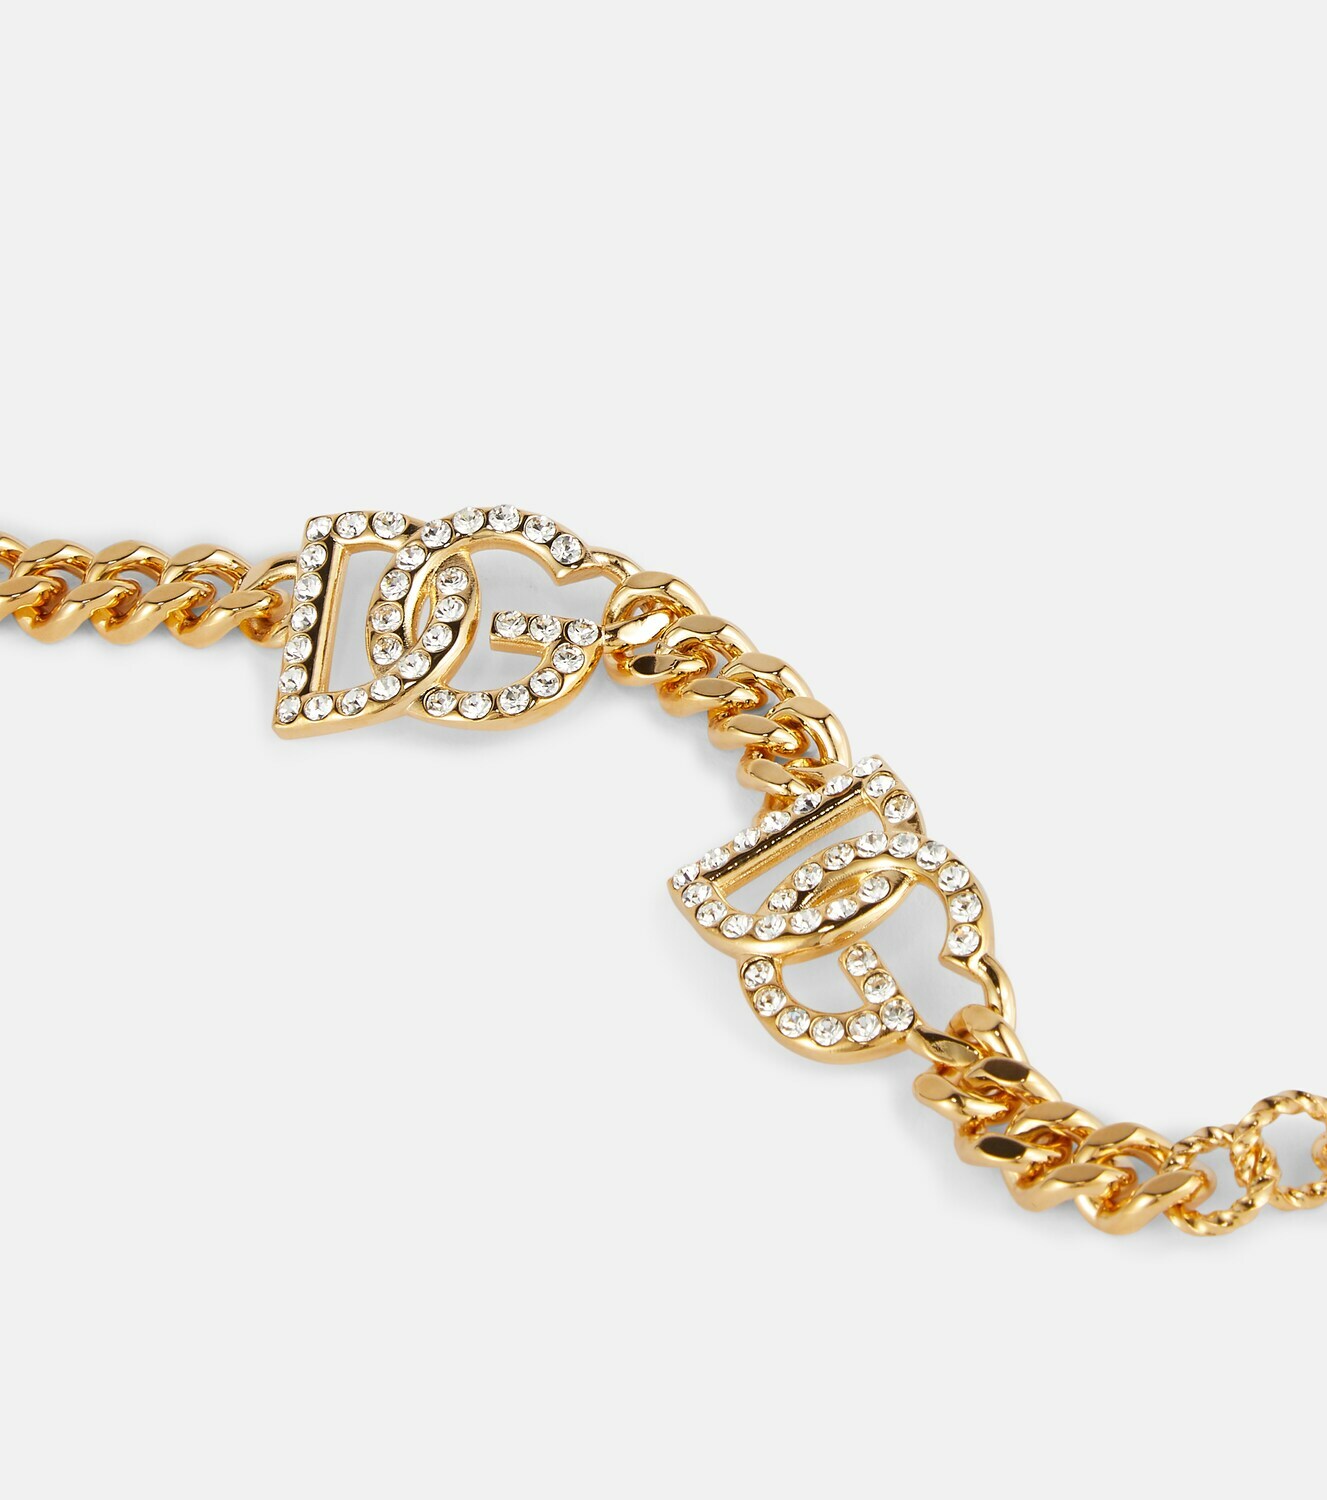 Dolce&Gabbana - DG embellished bracelet Dolce & Gabbana